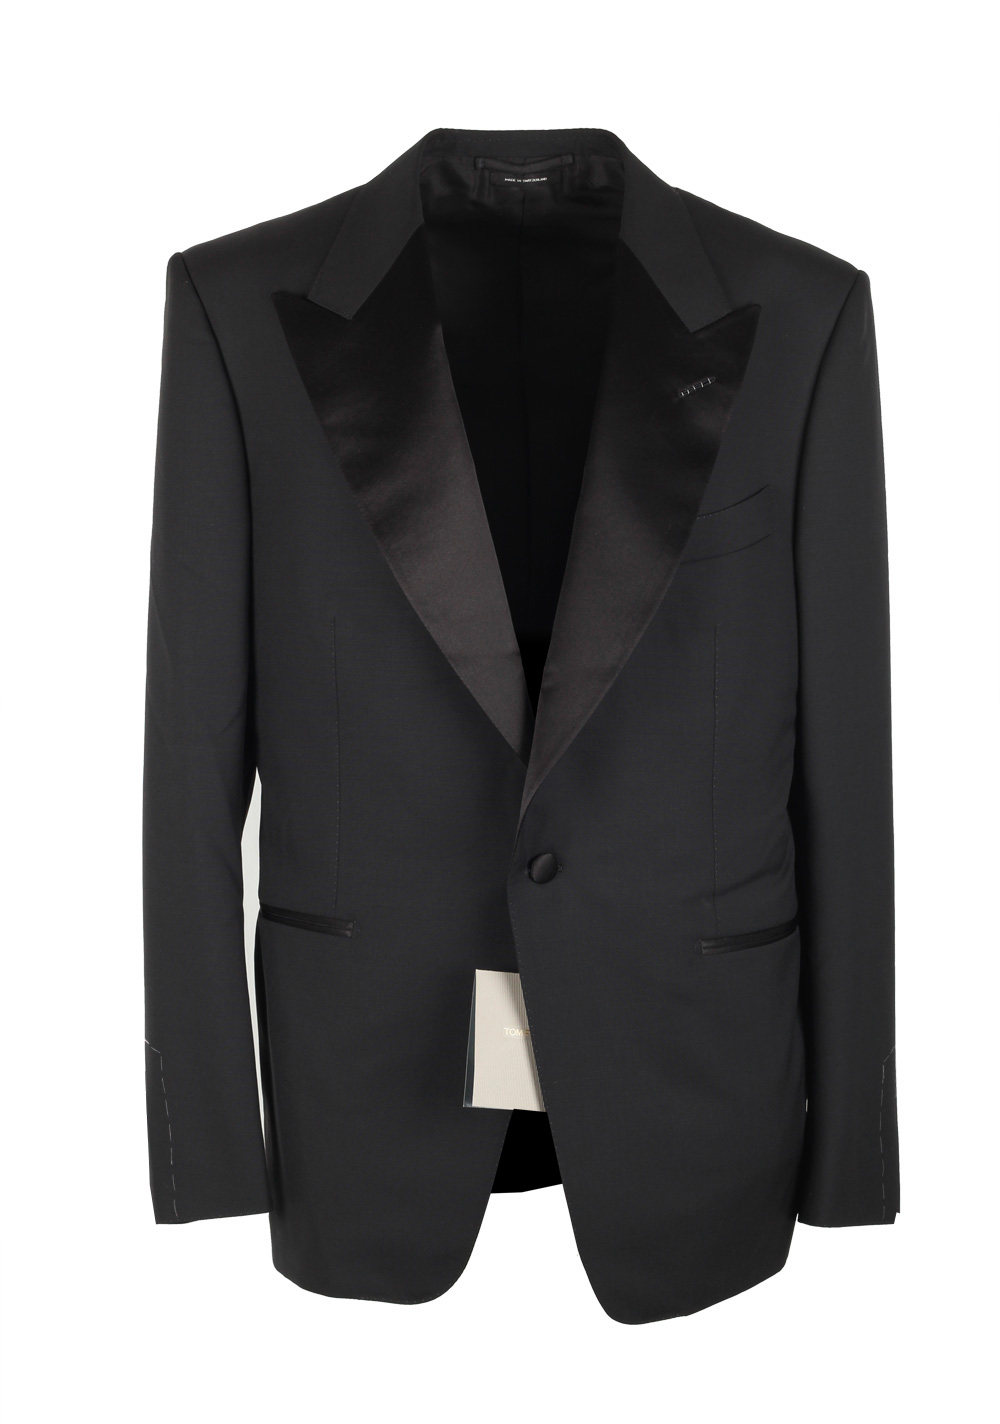 TOM FORD Windsor Black Tuxedo Dinner Jacket Size 60 / 50R U.S. Fit A ...